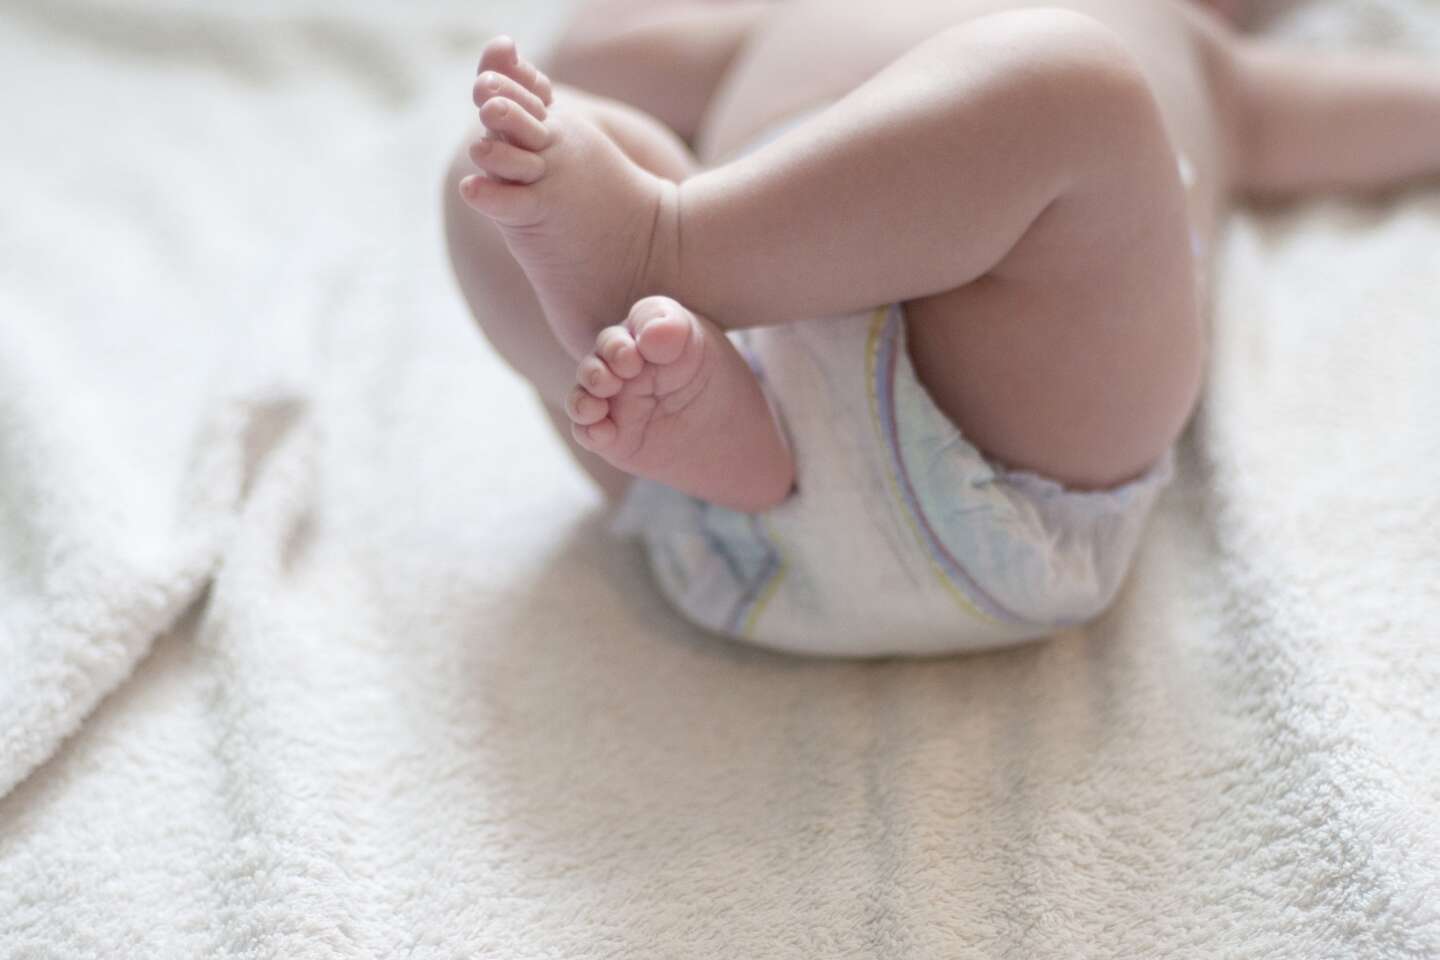 Des résidus toxiques toujours présents dans les couches de bébé